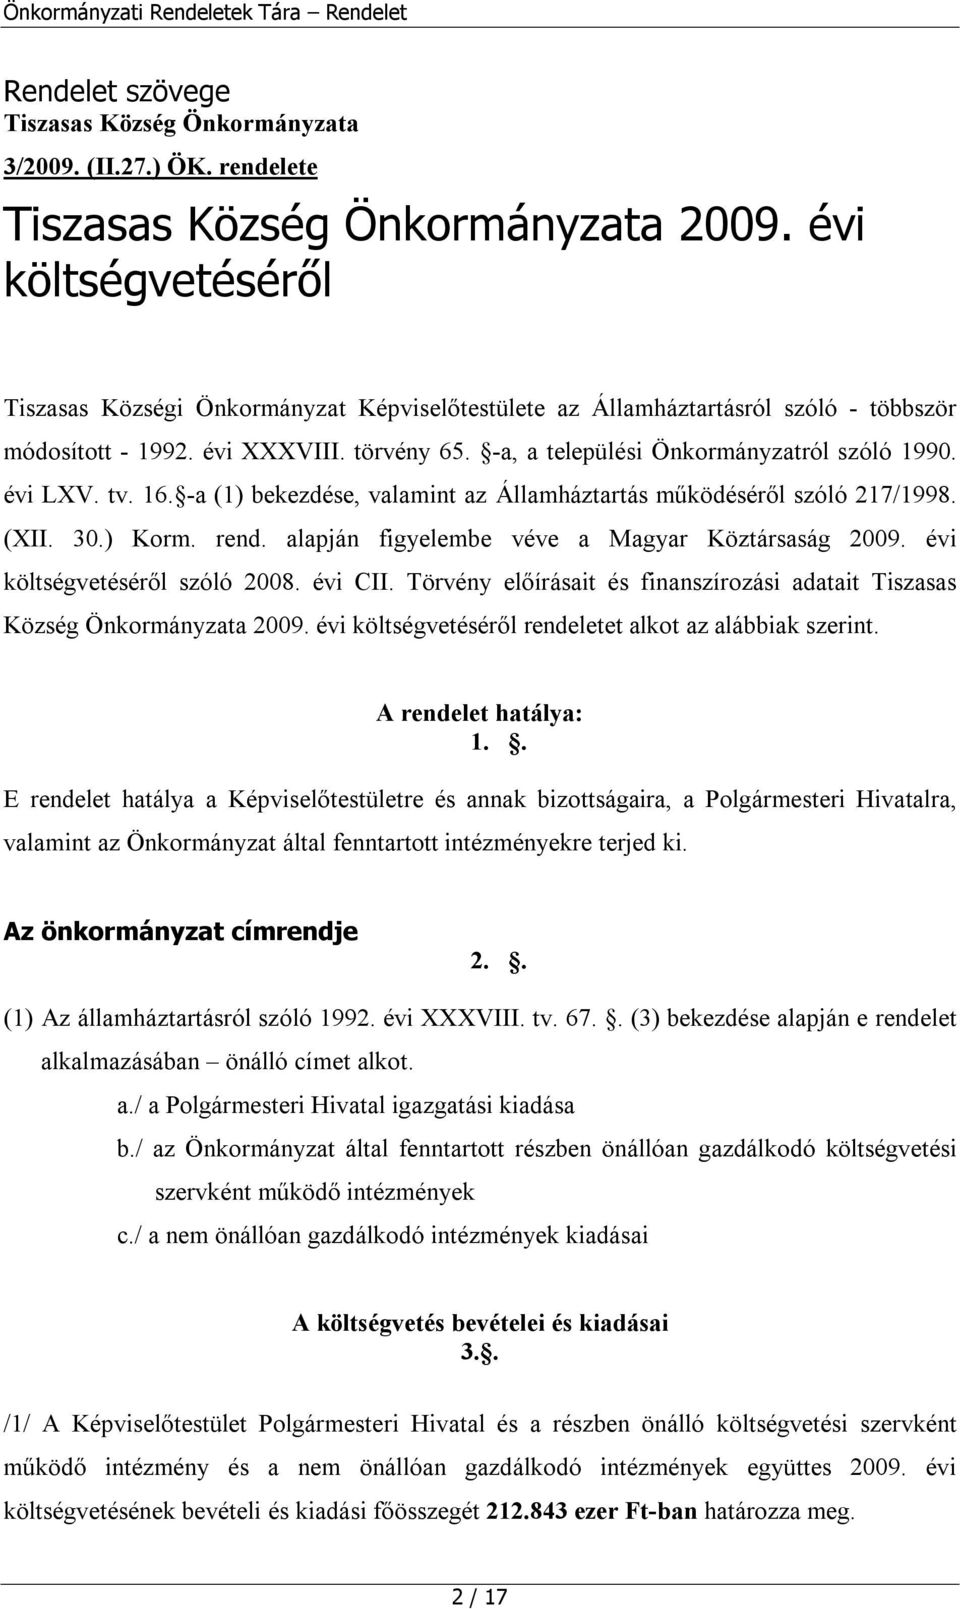 évi LXV. tv. 16. -a (1) bekezdése, valamint az Államháztartás működéséről szóló 217/1998. (XII. 30.) Korm. rend. alapján figyelembe véve a Magyar Köztársaság 2009. évi költségvetéséről szóló 2008.